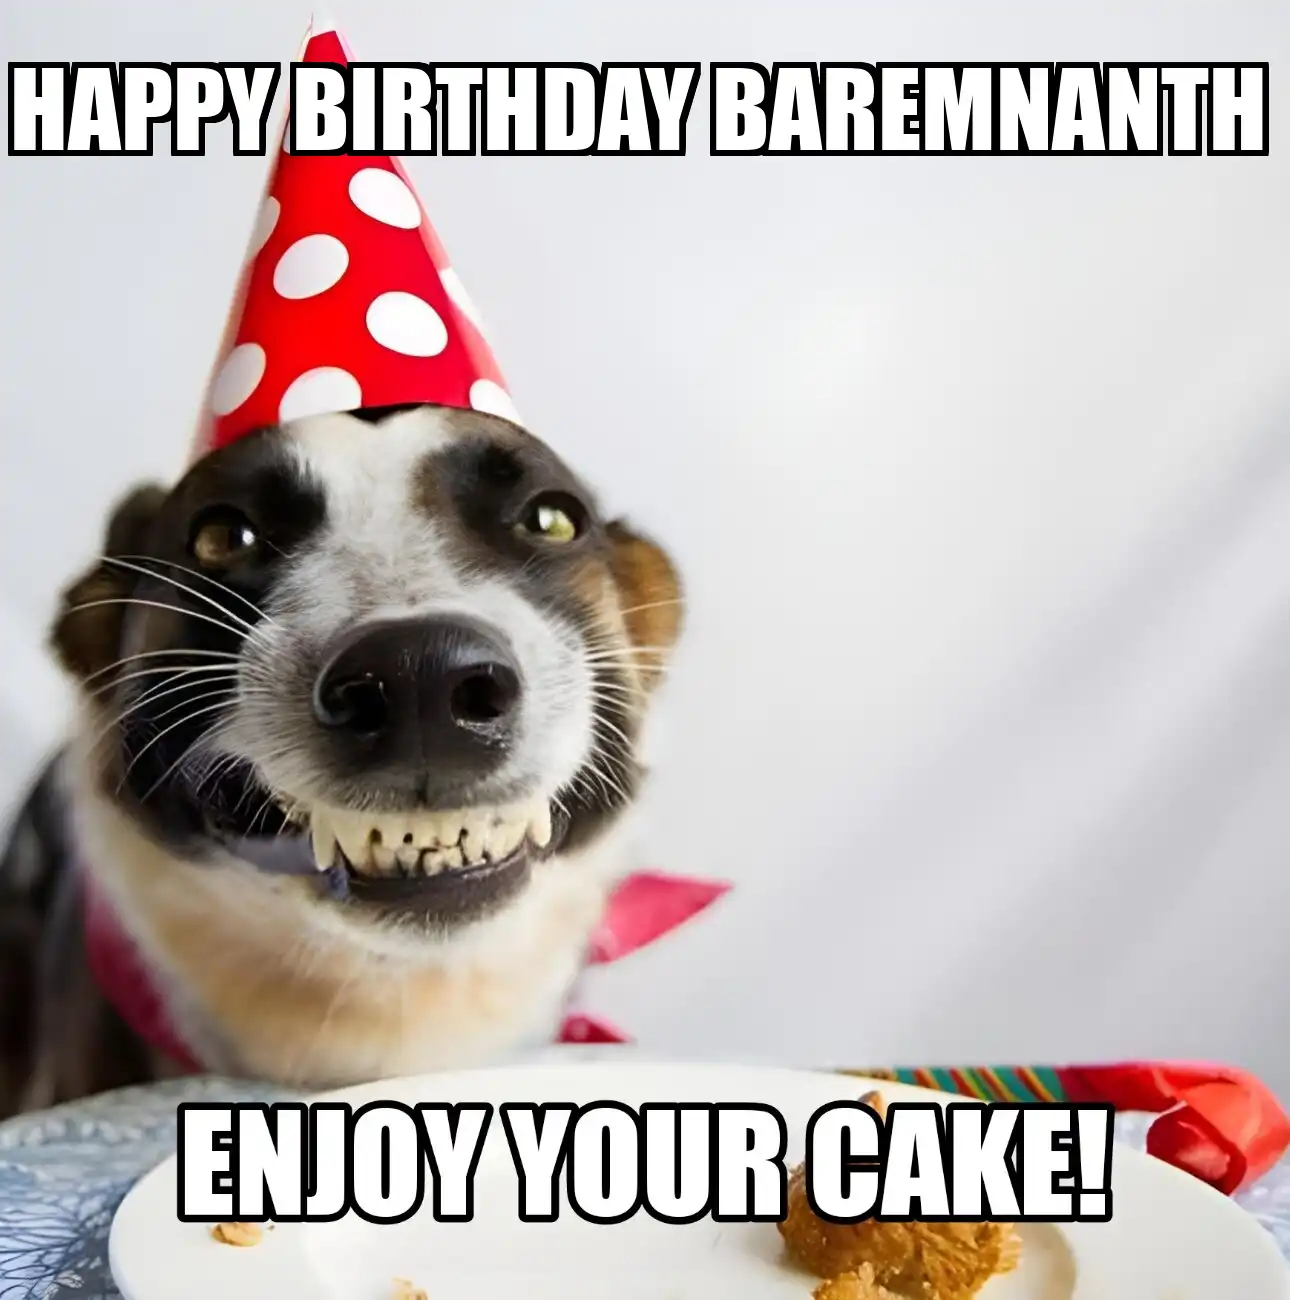 Happy Birthday Baremnanth Enjoy Your Cake Dog Meme